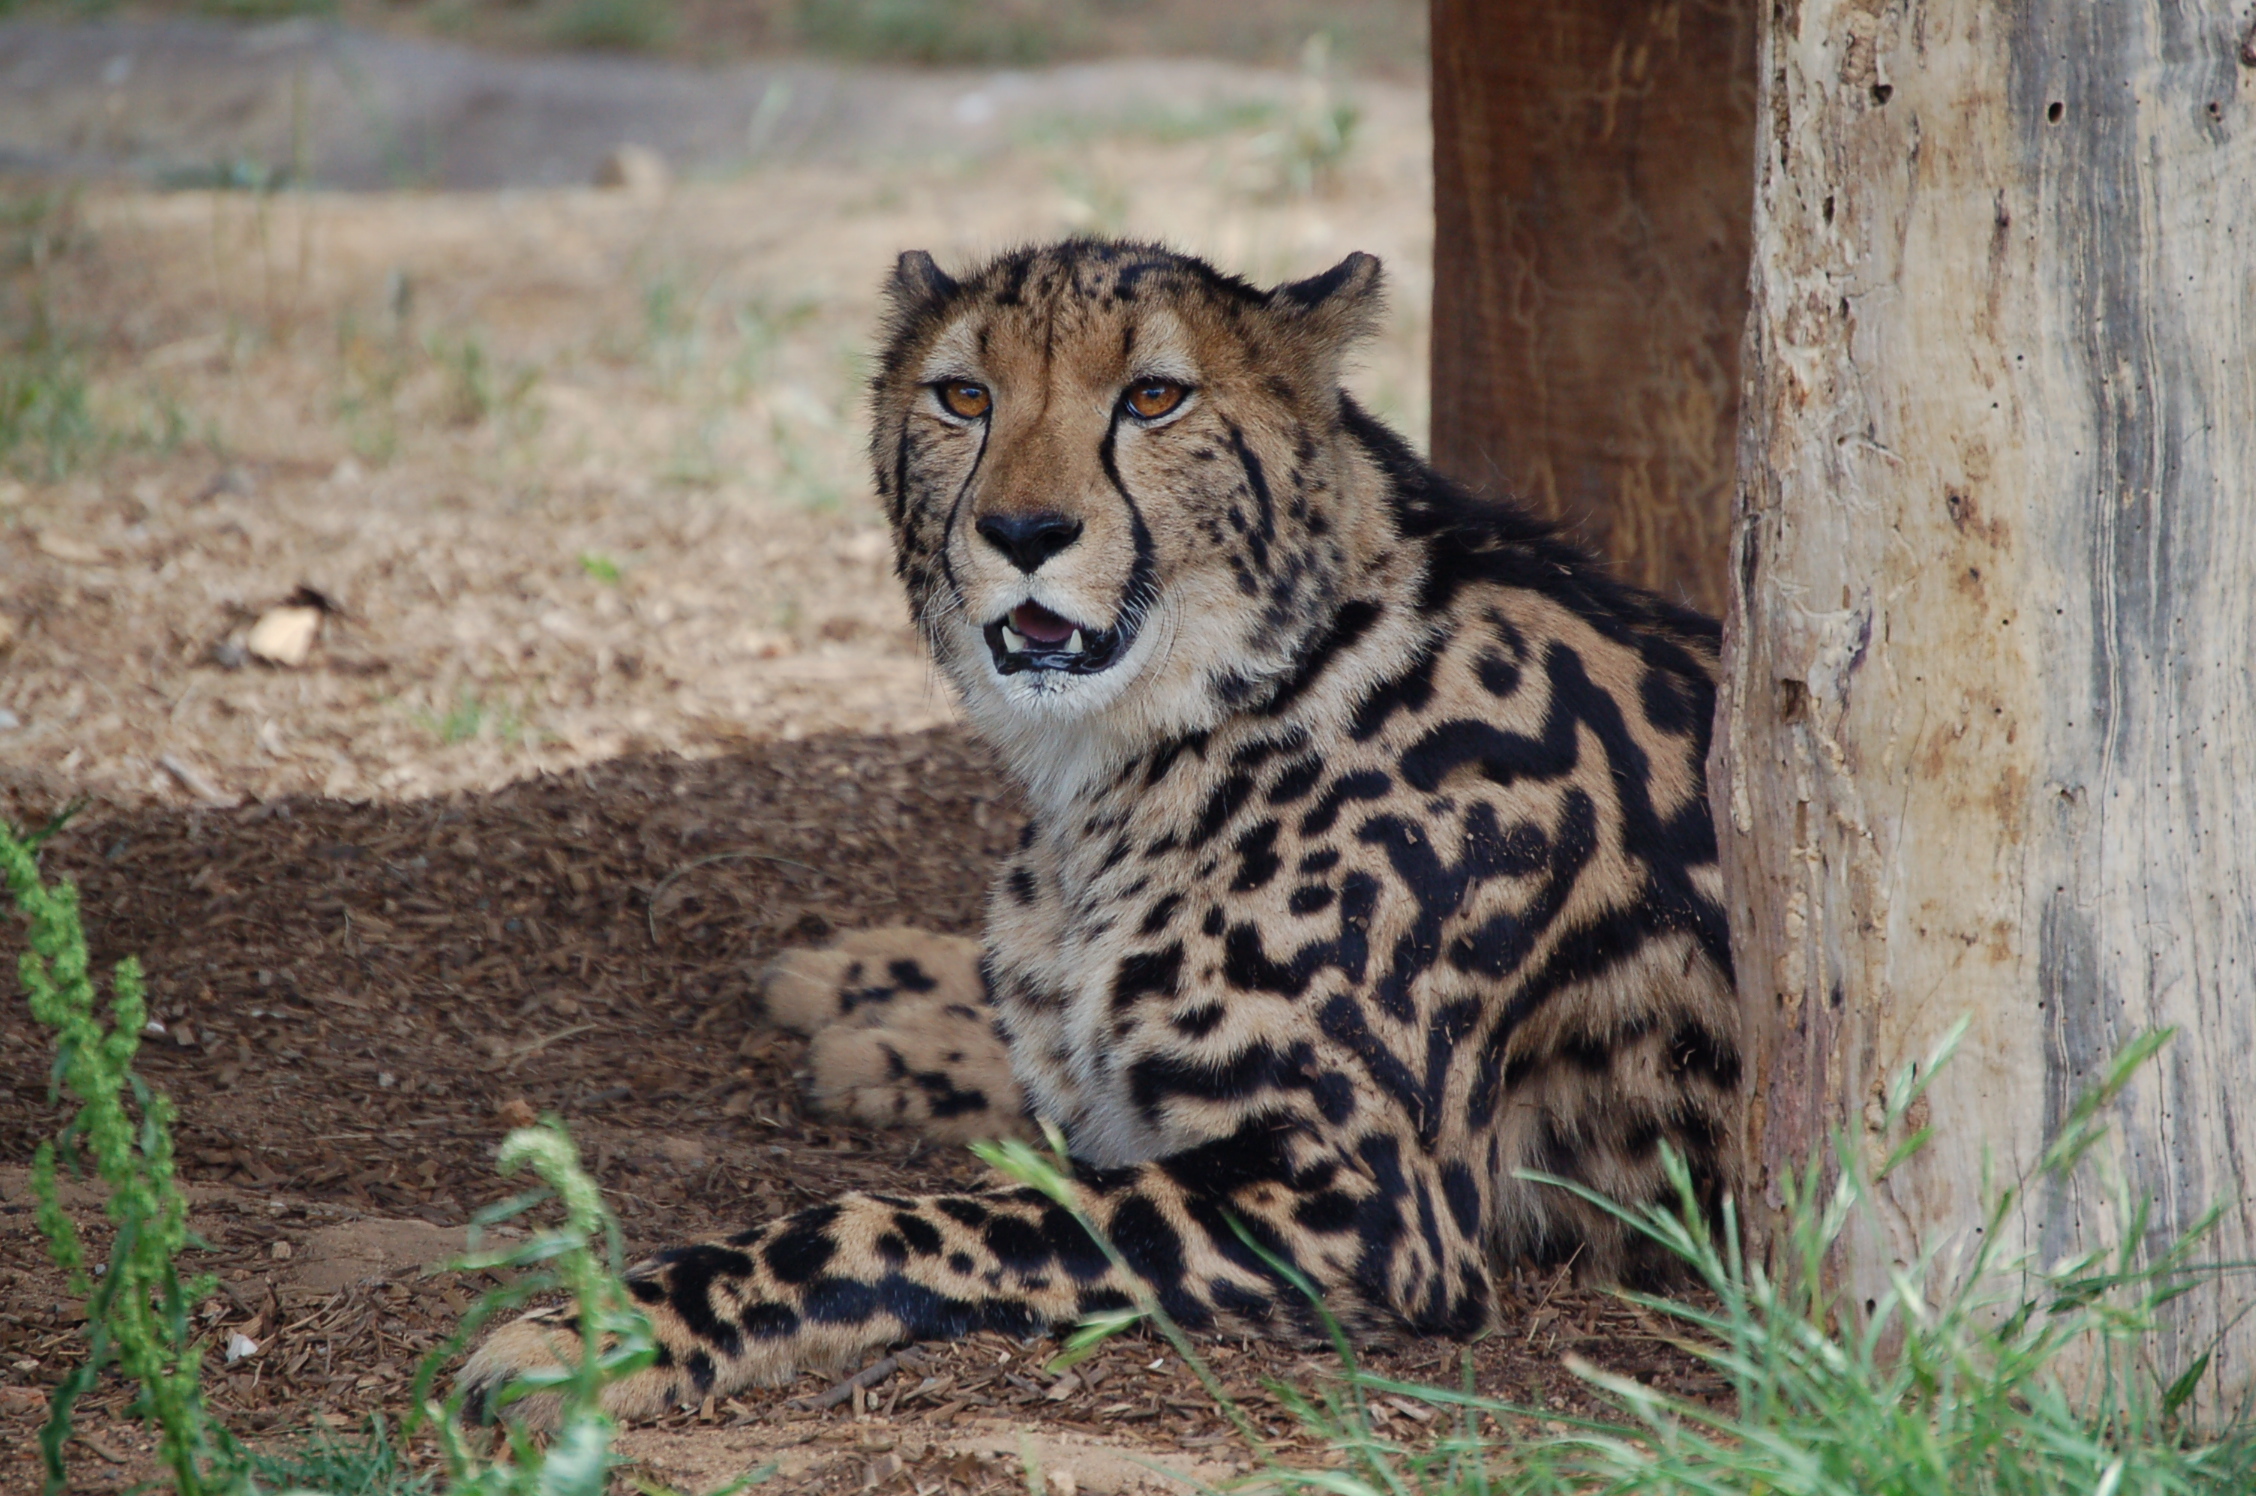 Cheetahs | The Lion King Wiki | Fandom